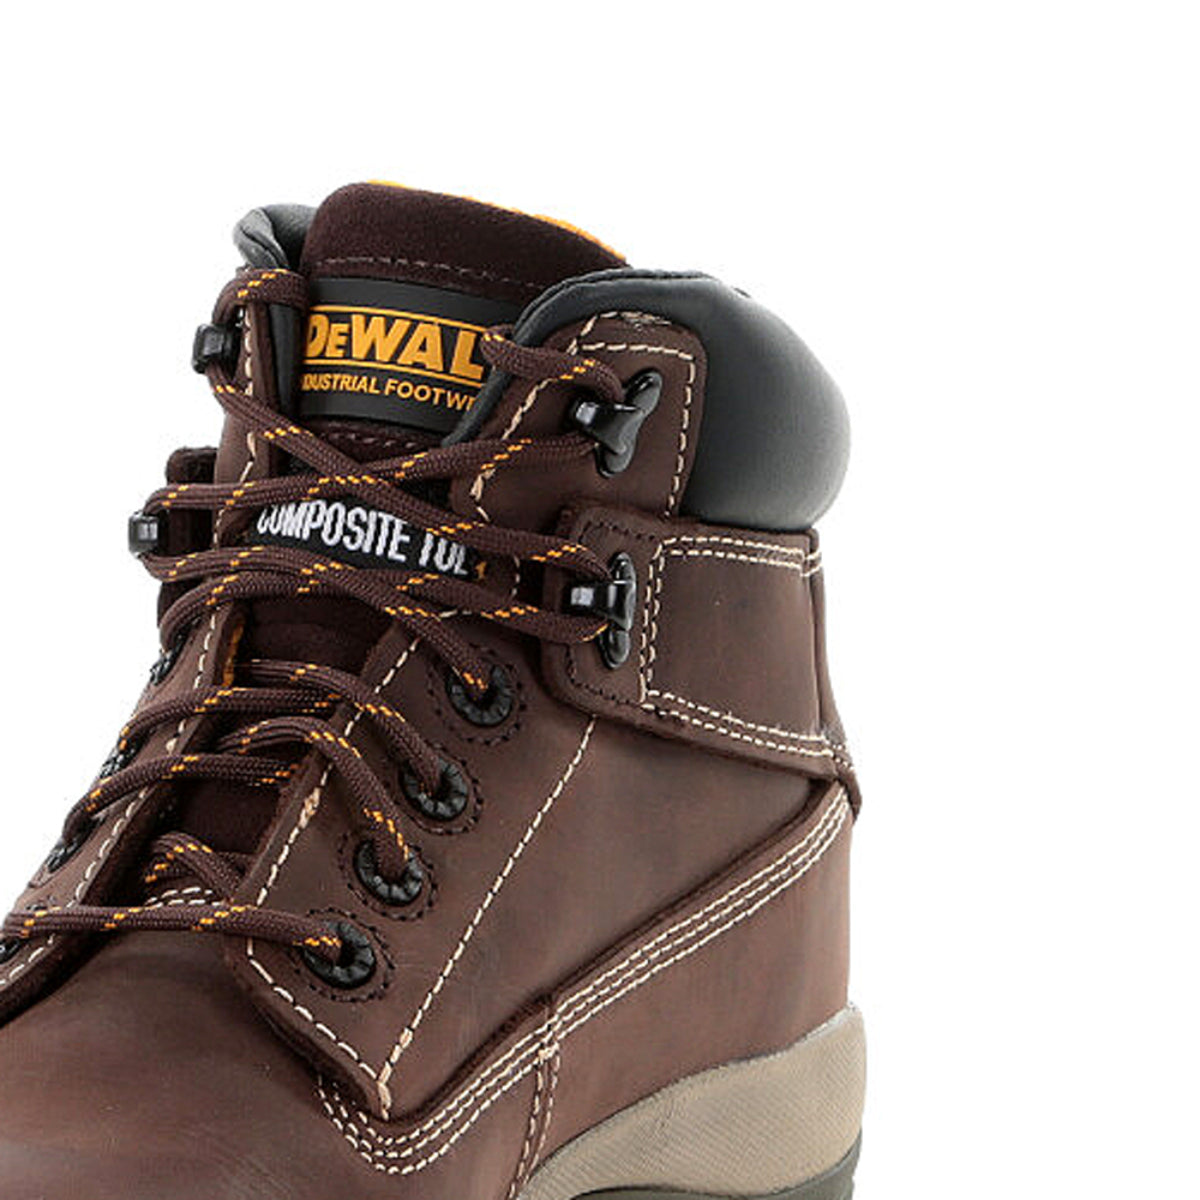 DeWalt Brown Non-Metallic Safety Boot